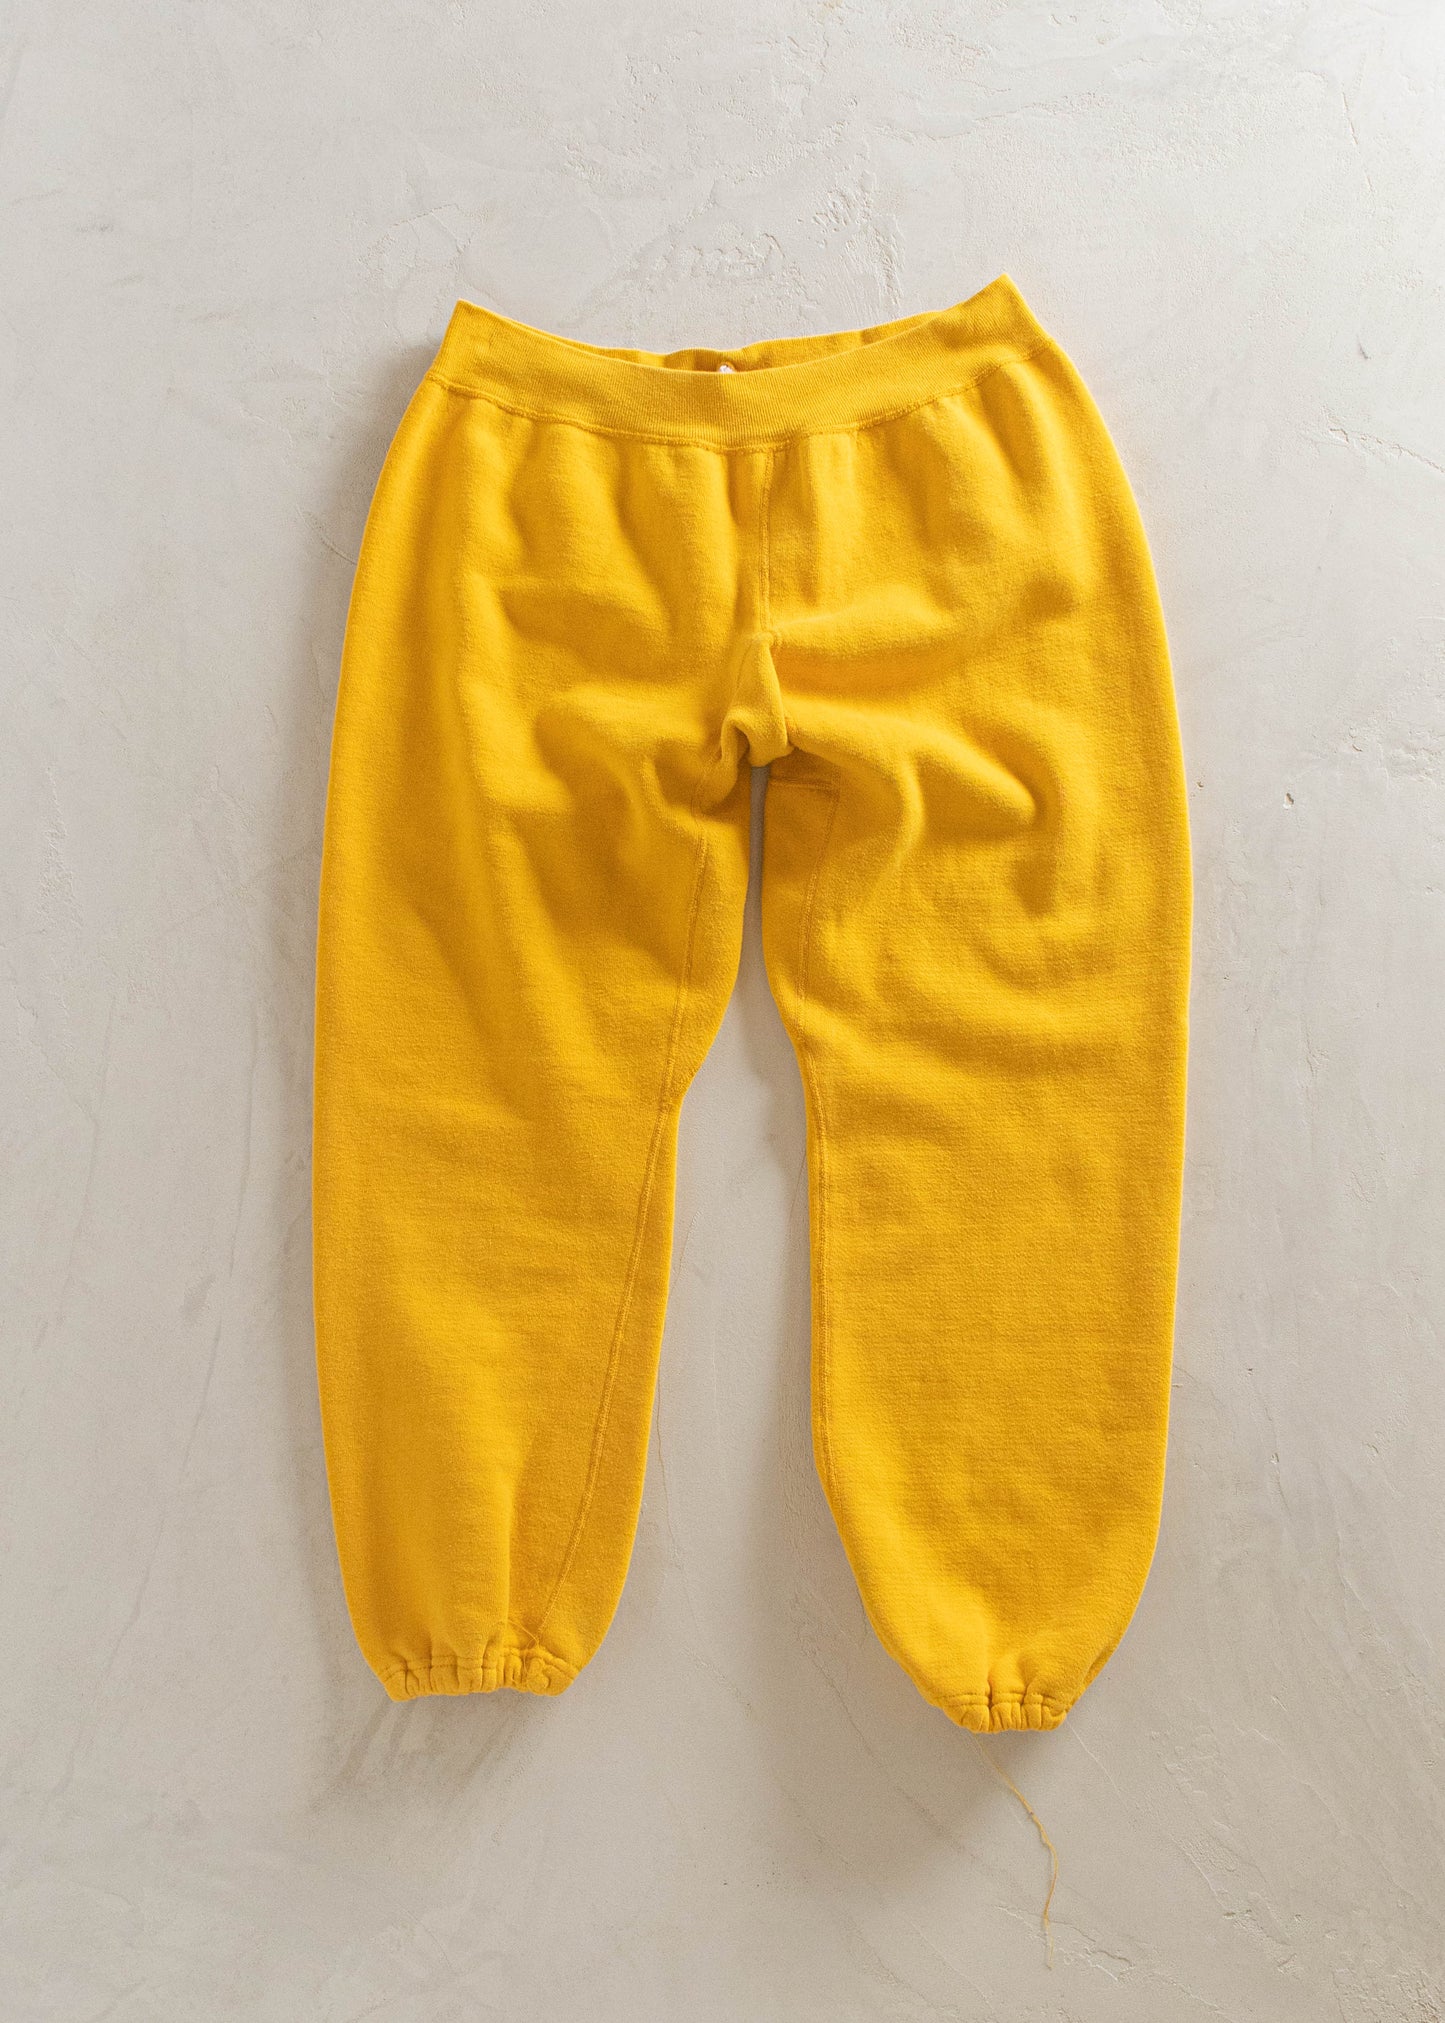 1970s Russel Athletic Sweatpants Size M/L